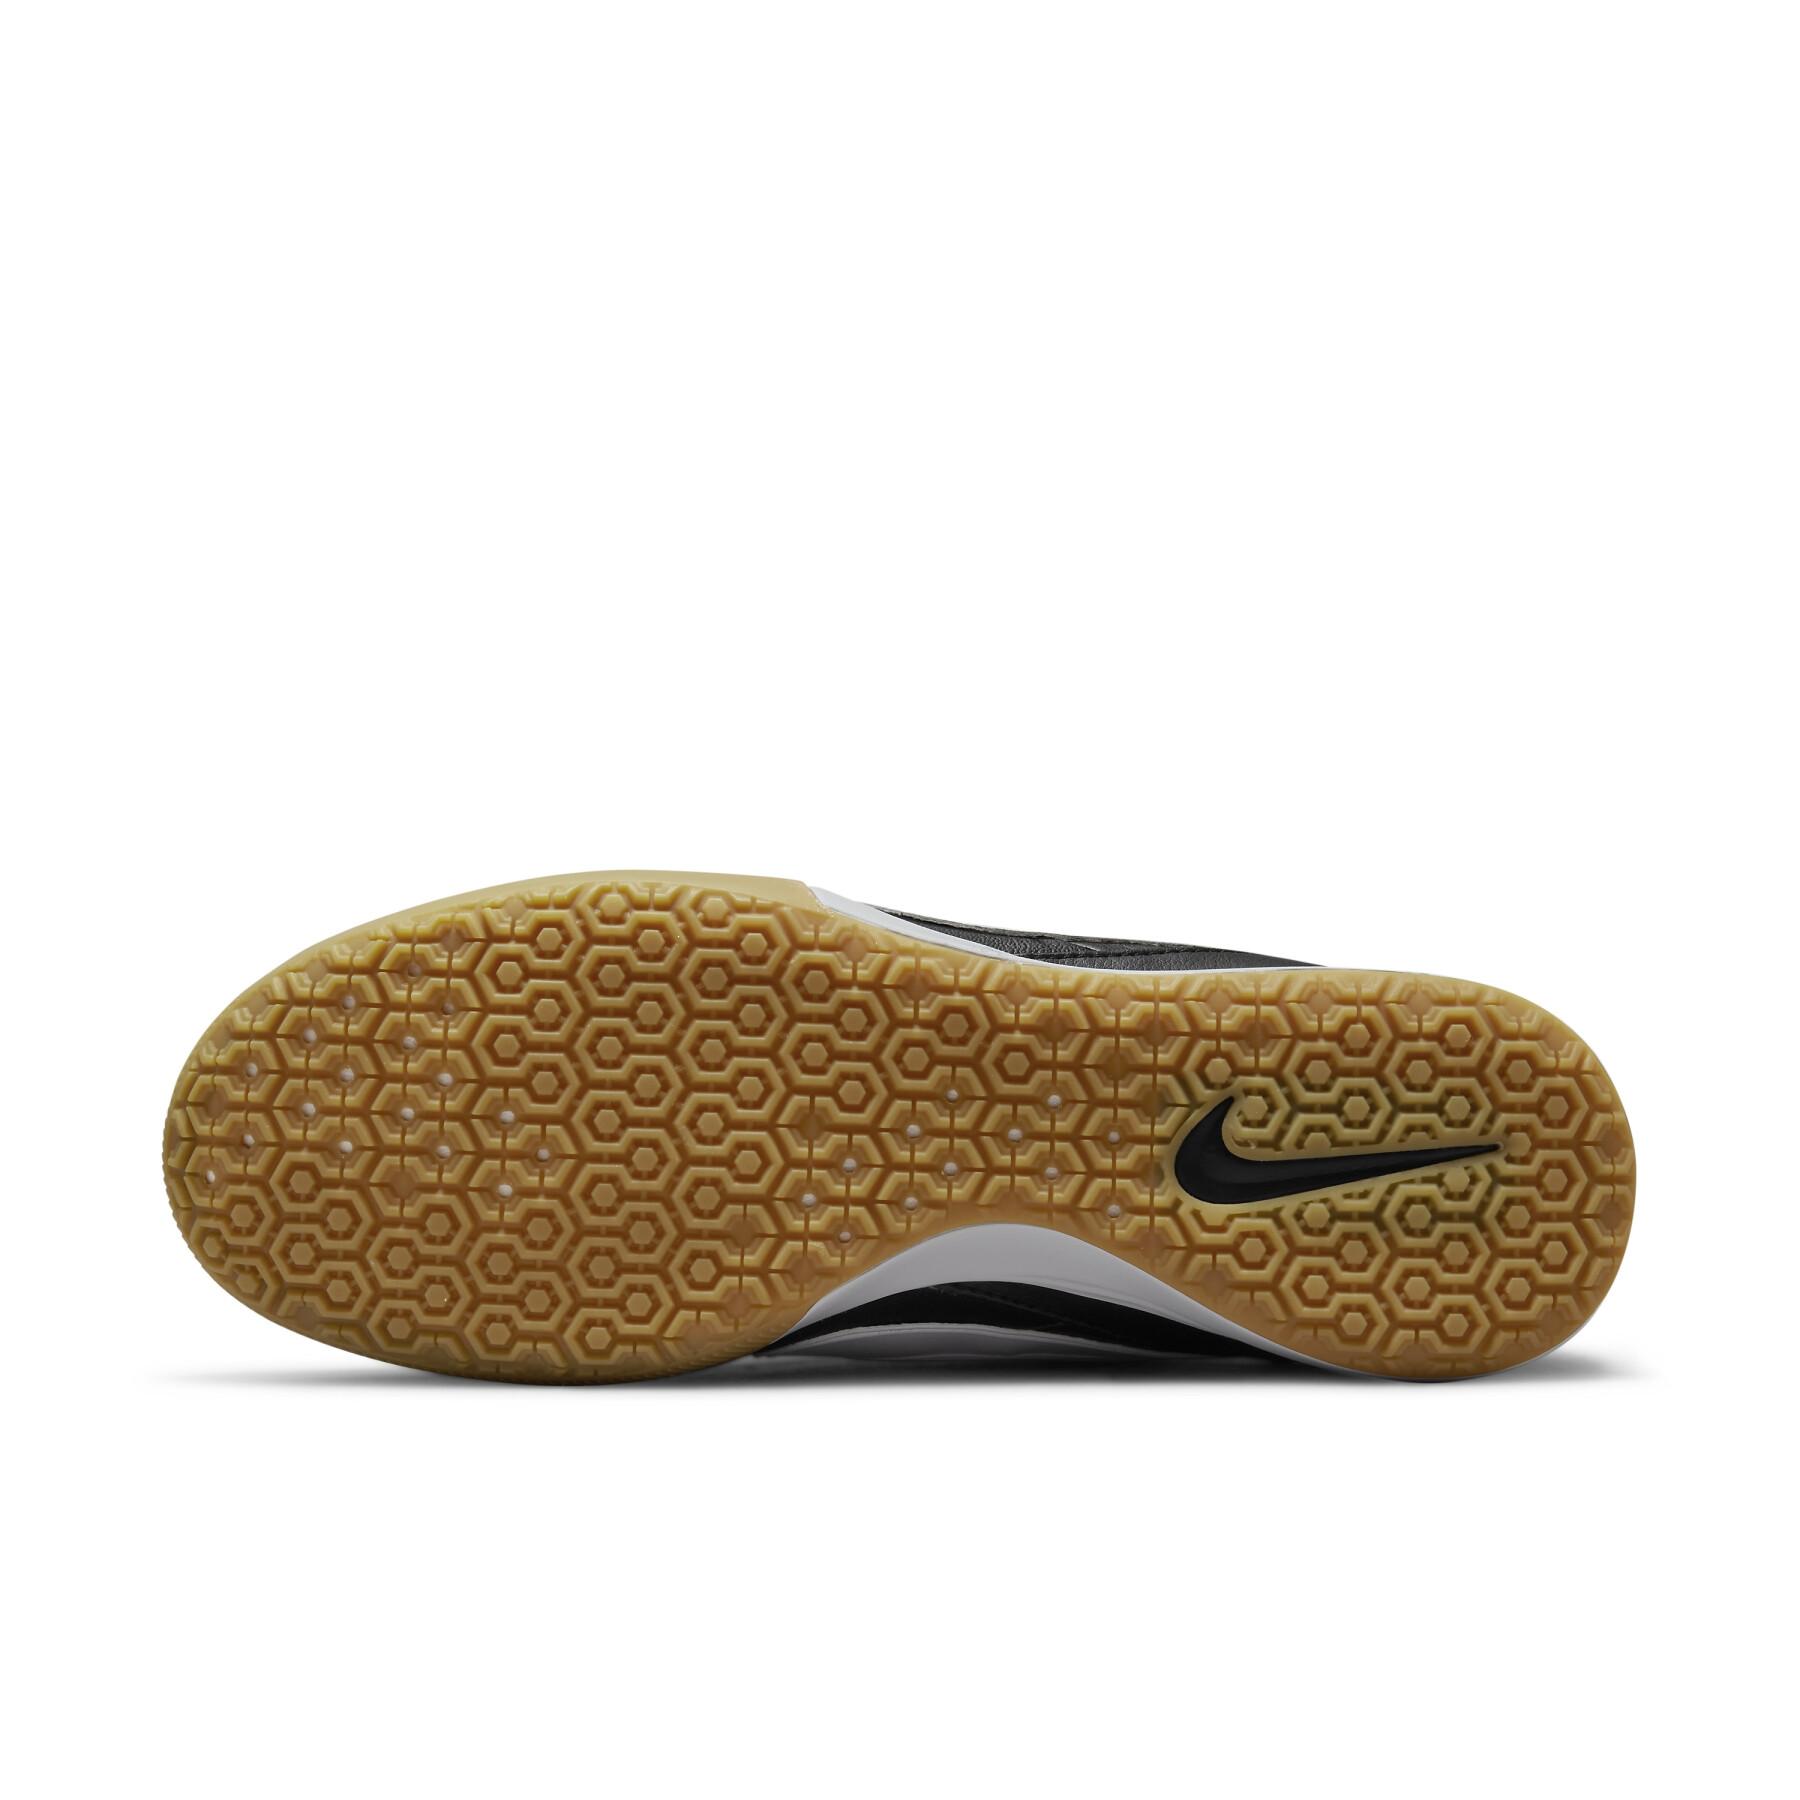 Buty do gry w piłkę nożną Nike Premier 3 IC